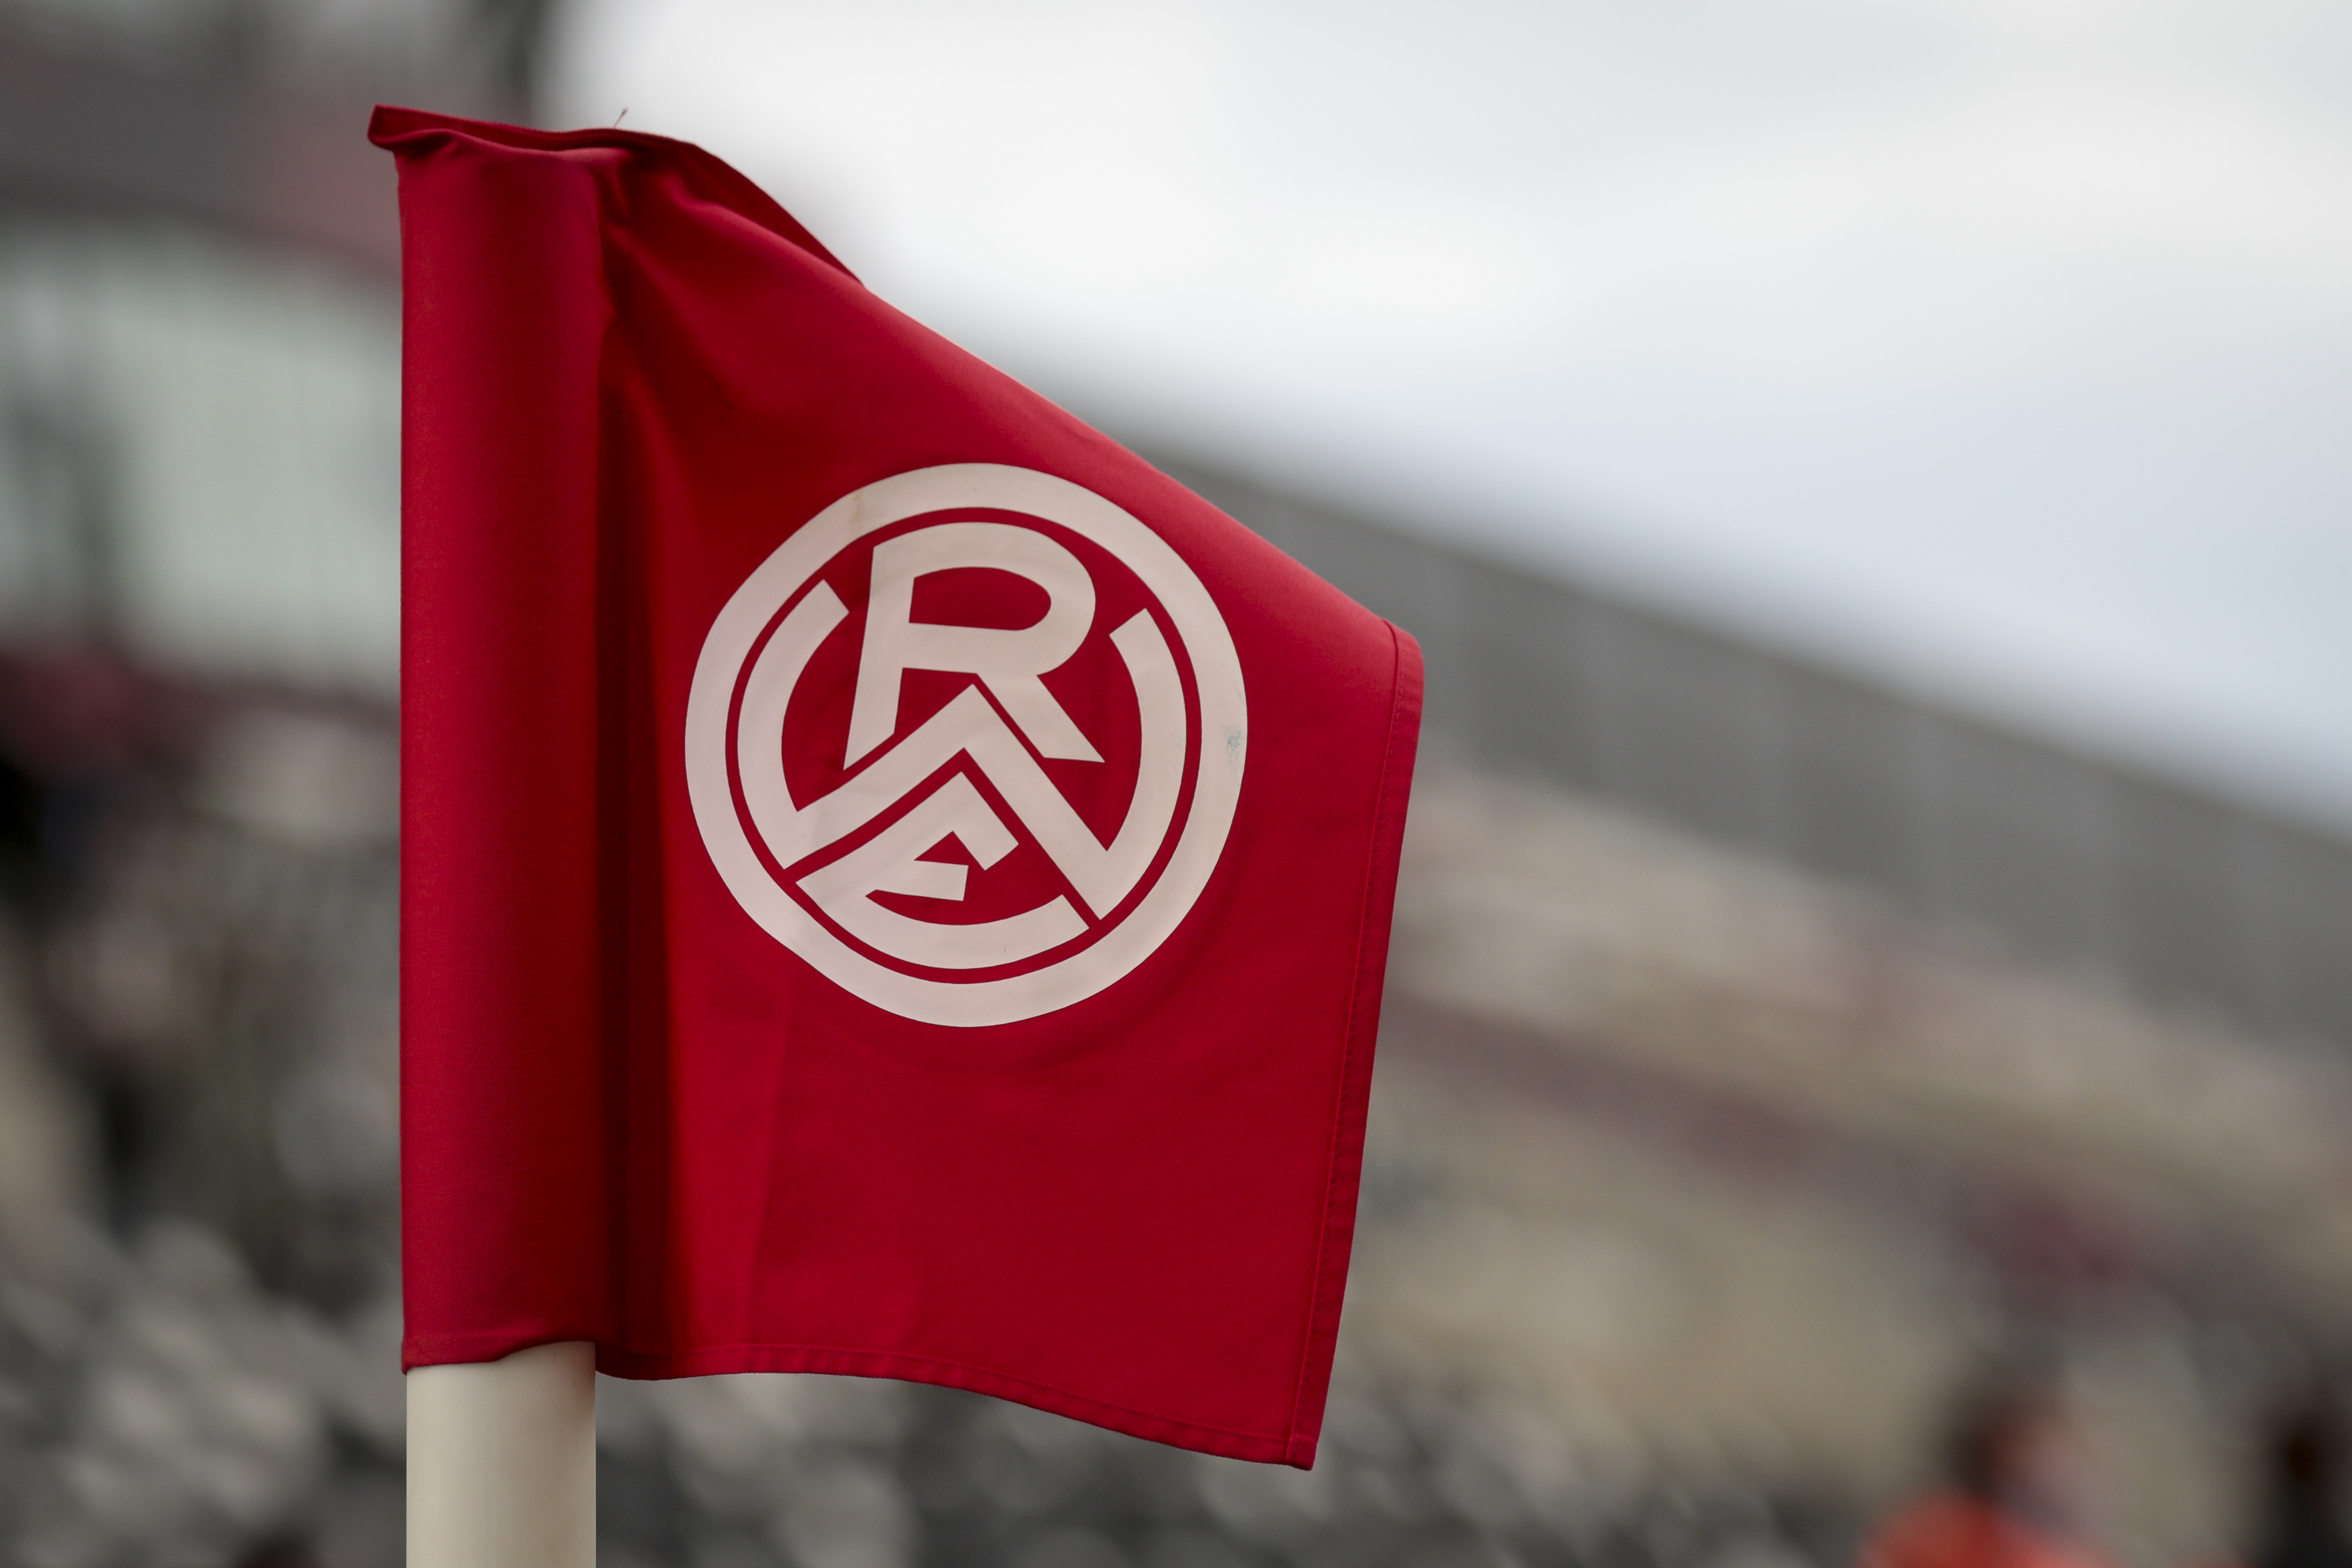 Partieausfall: Das Spiel zwischen Rot Weiss Ahlen und Rot-Weiss Essen am kommenden Samstag um 14.00 Uhr kann witterungsbedingt nicht stattfinden.